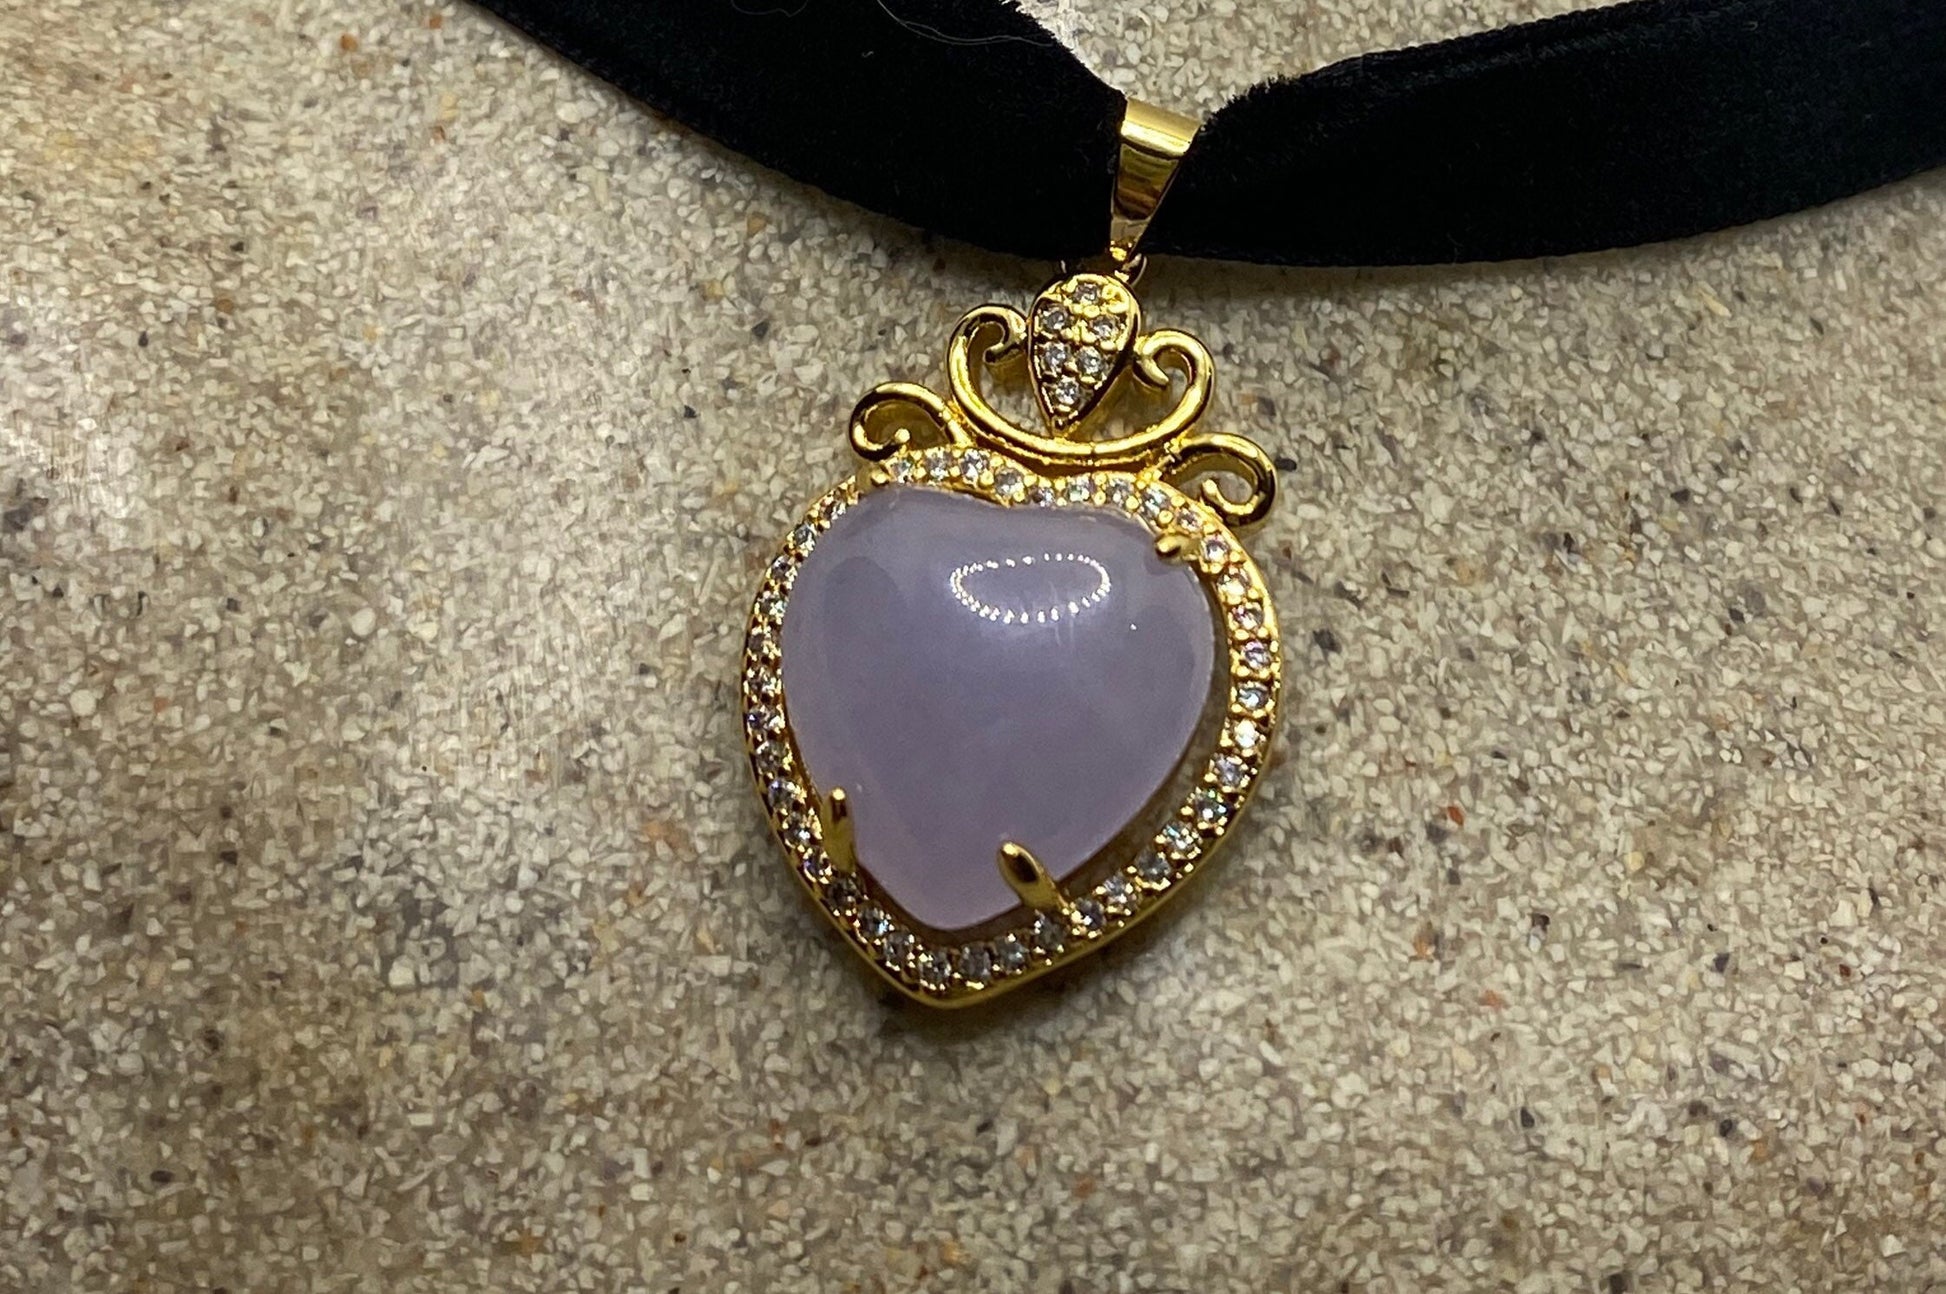 Vintage Lavender Jade Choker Gold Finish Necklace Pendant